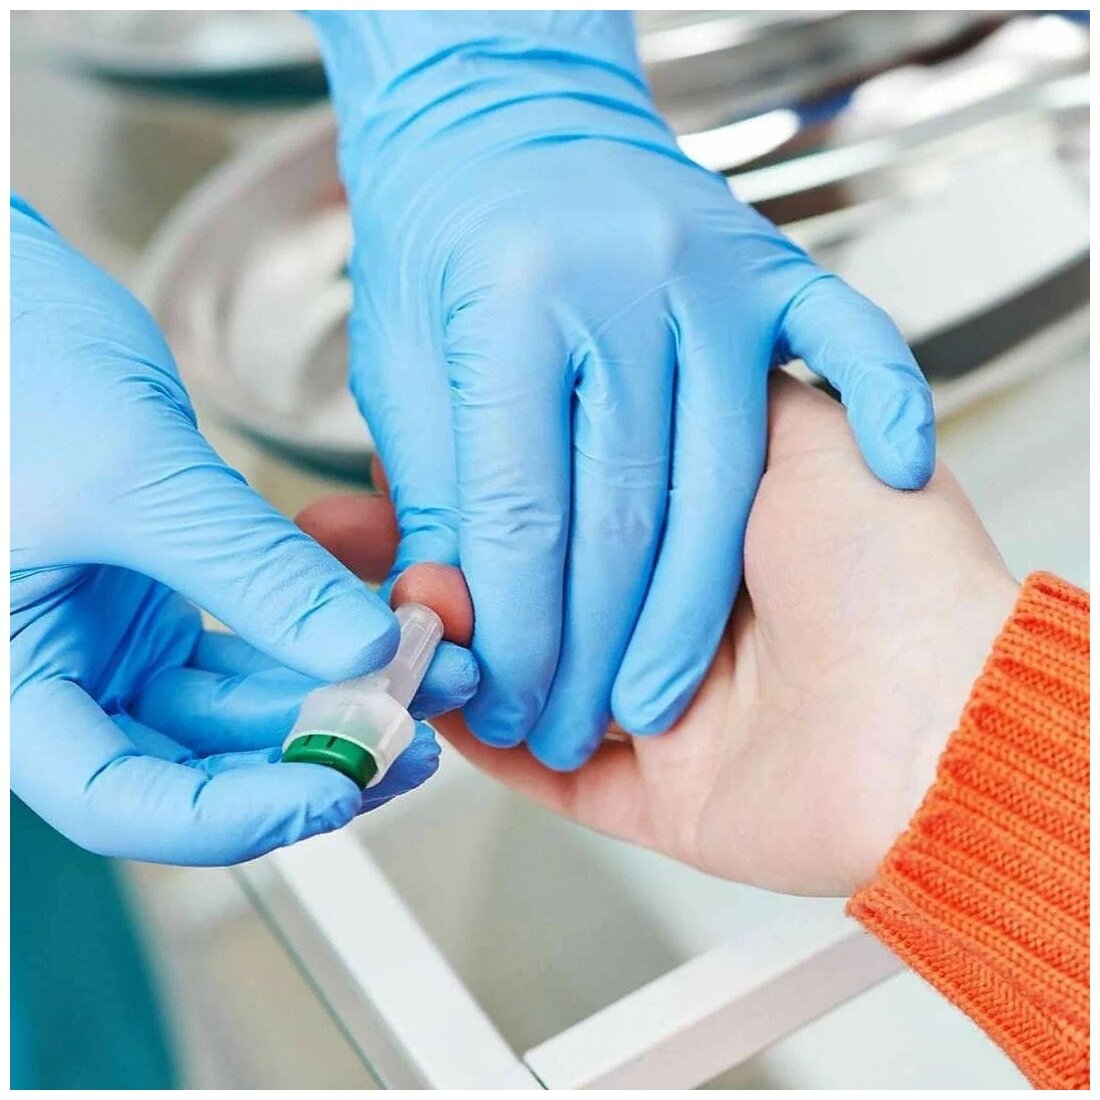 Автоматический ланцет Prolance для прокола пальца для анализов где требуется капиллярная кровь, зеленый, глубина прокола 1,8 мм, 10 шт.